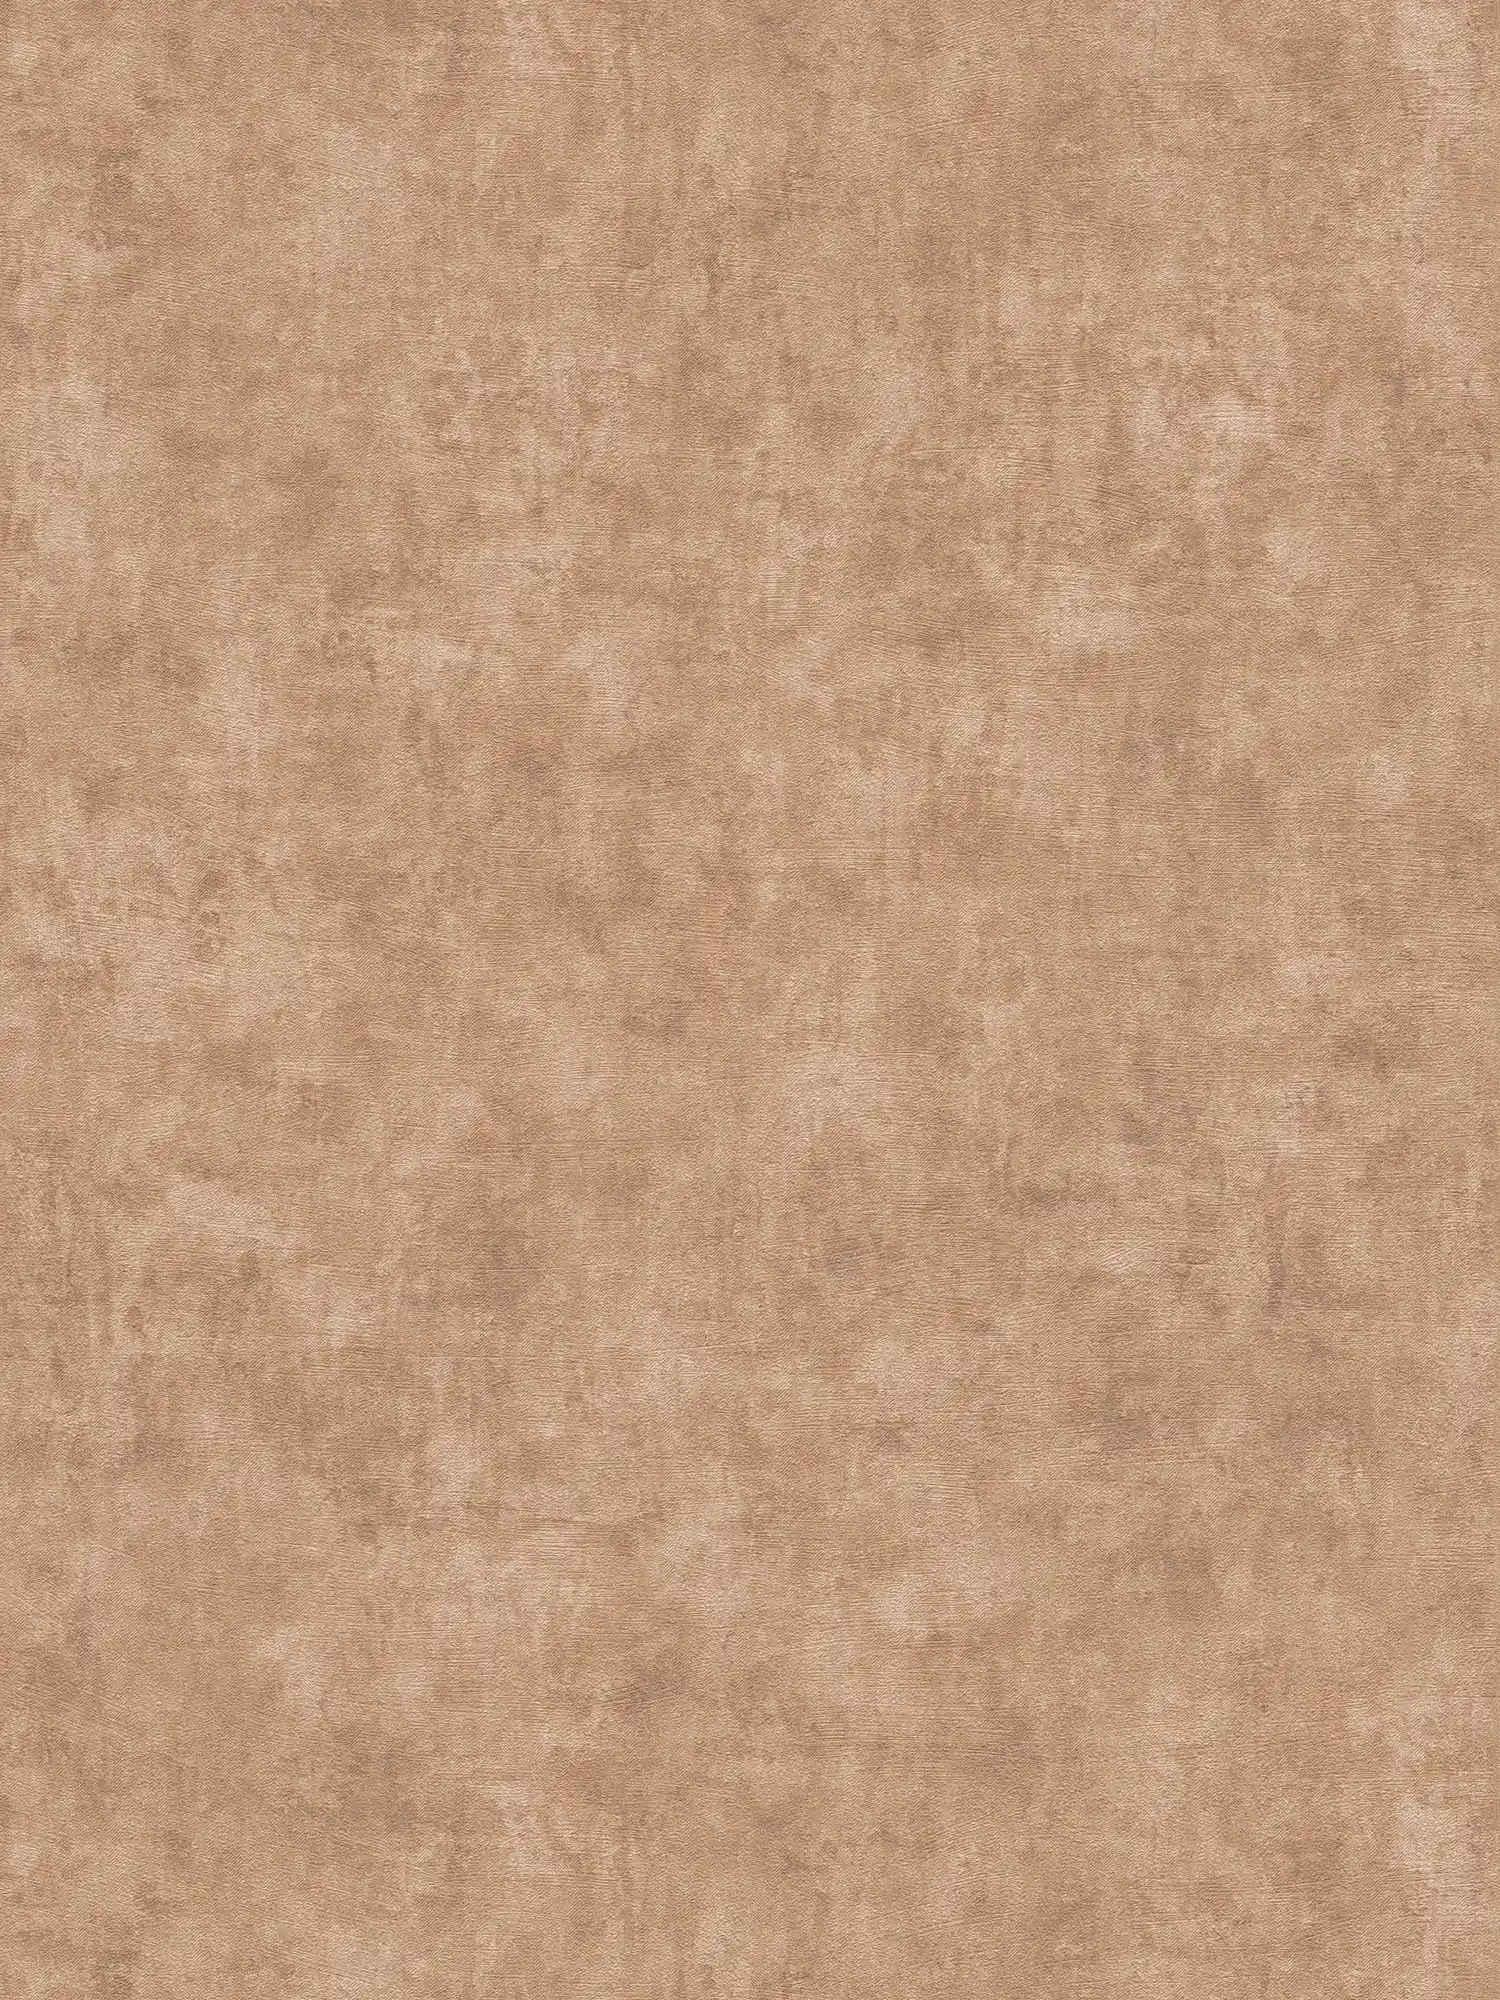 Papel pintado no tejido con textura lisa - beige, marrón, naranja
